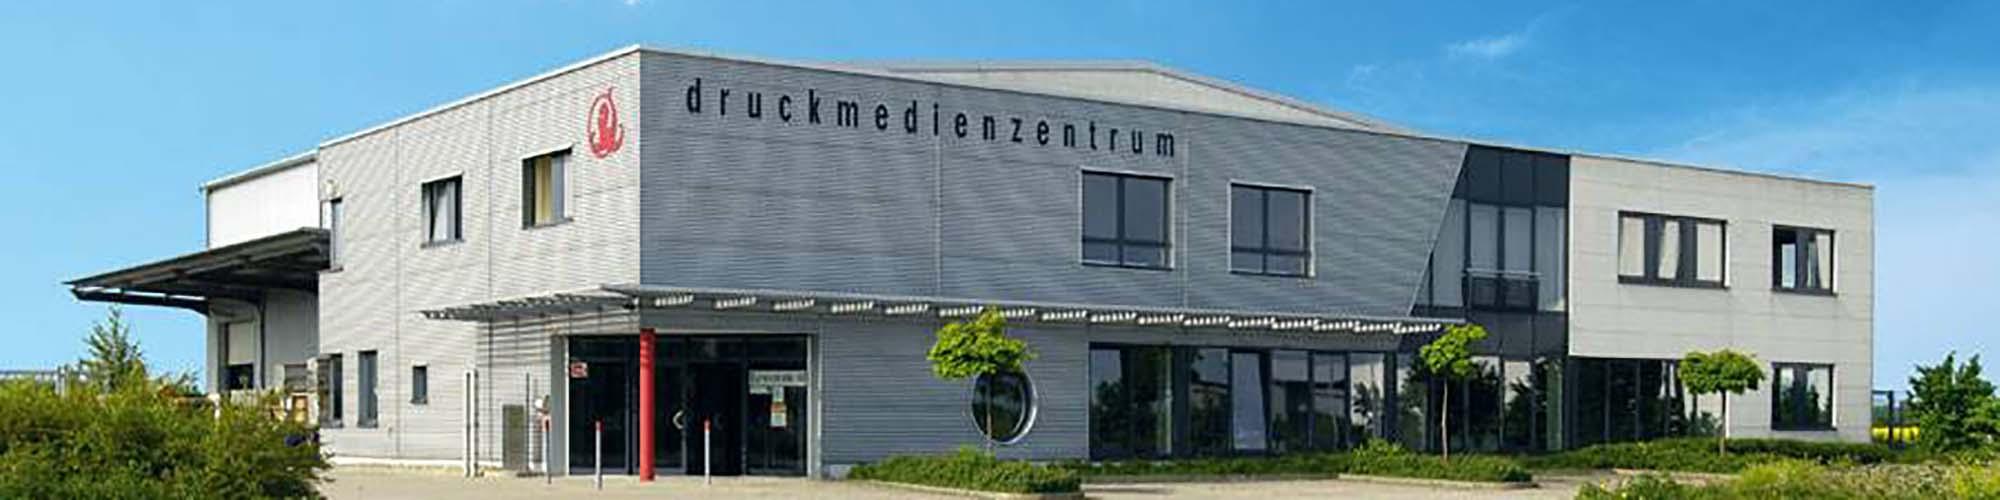 Druckmedienzentrum Gotha GmbH